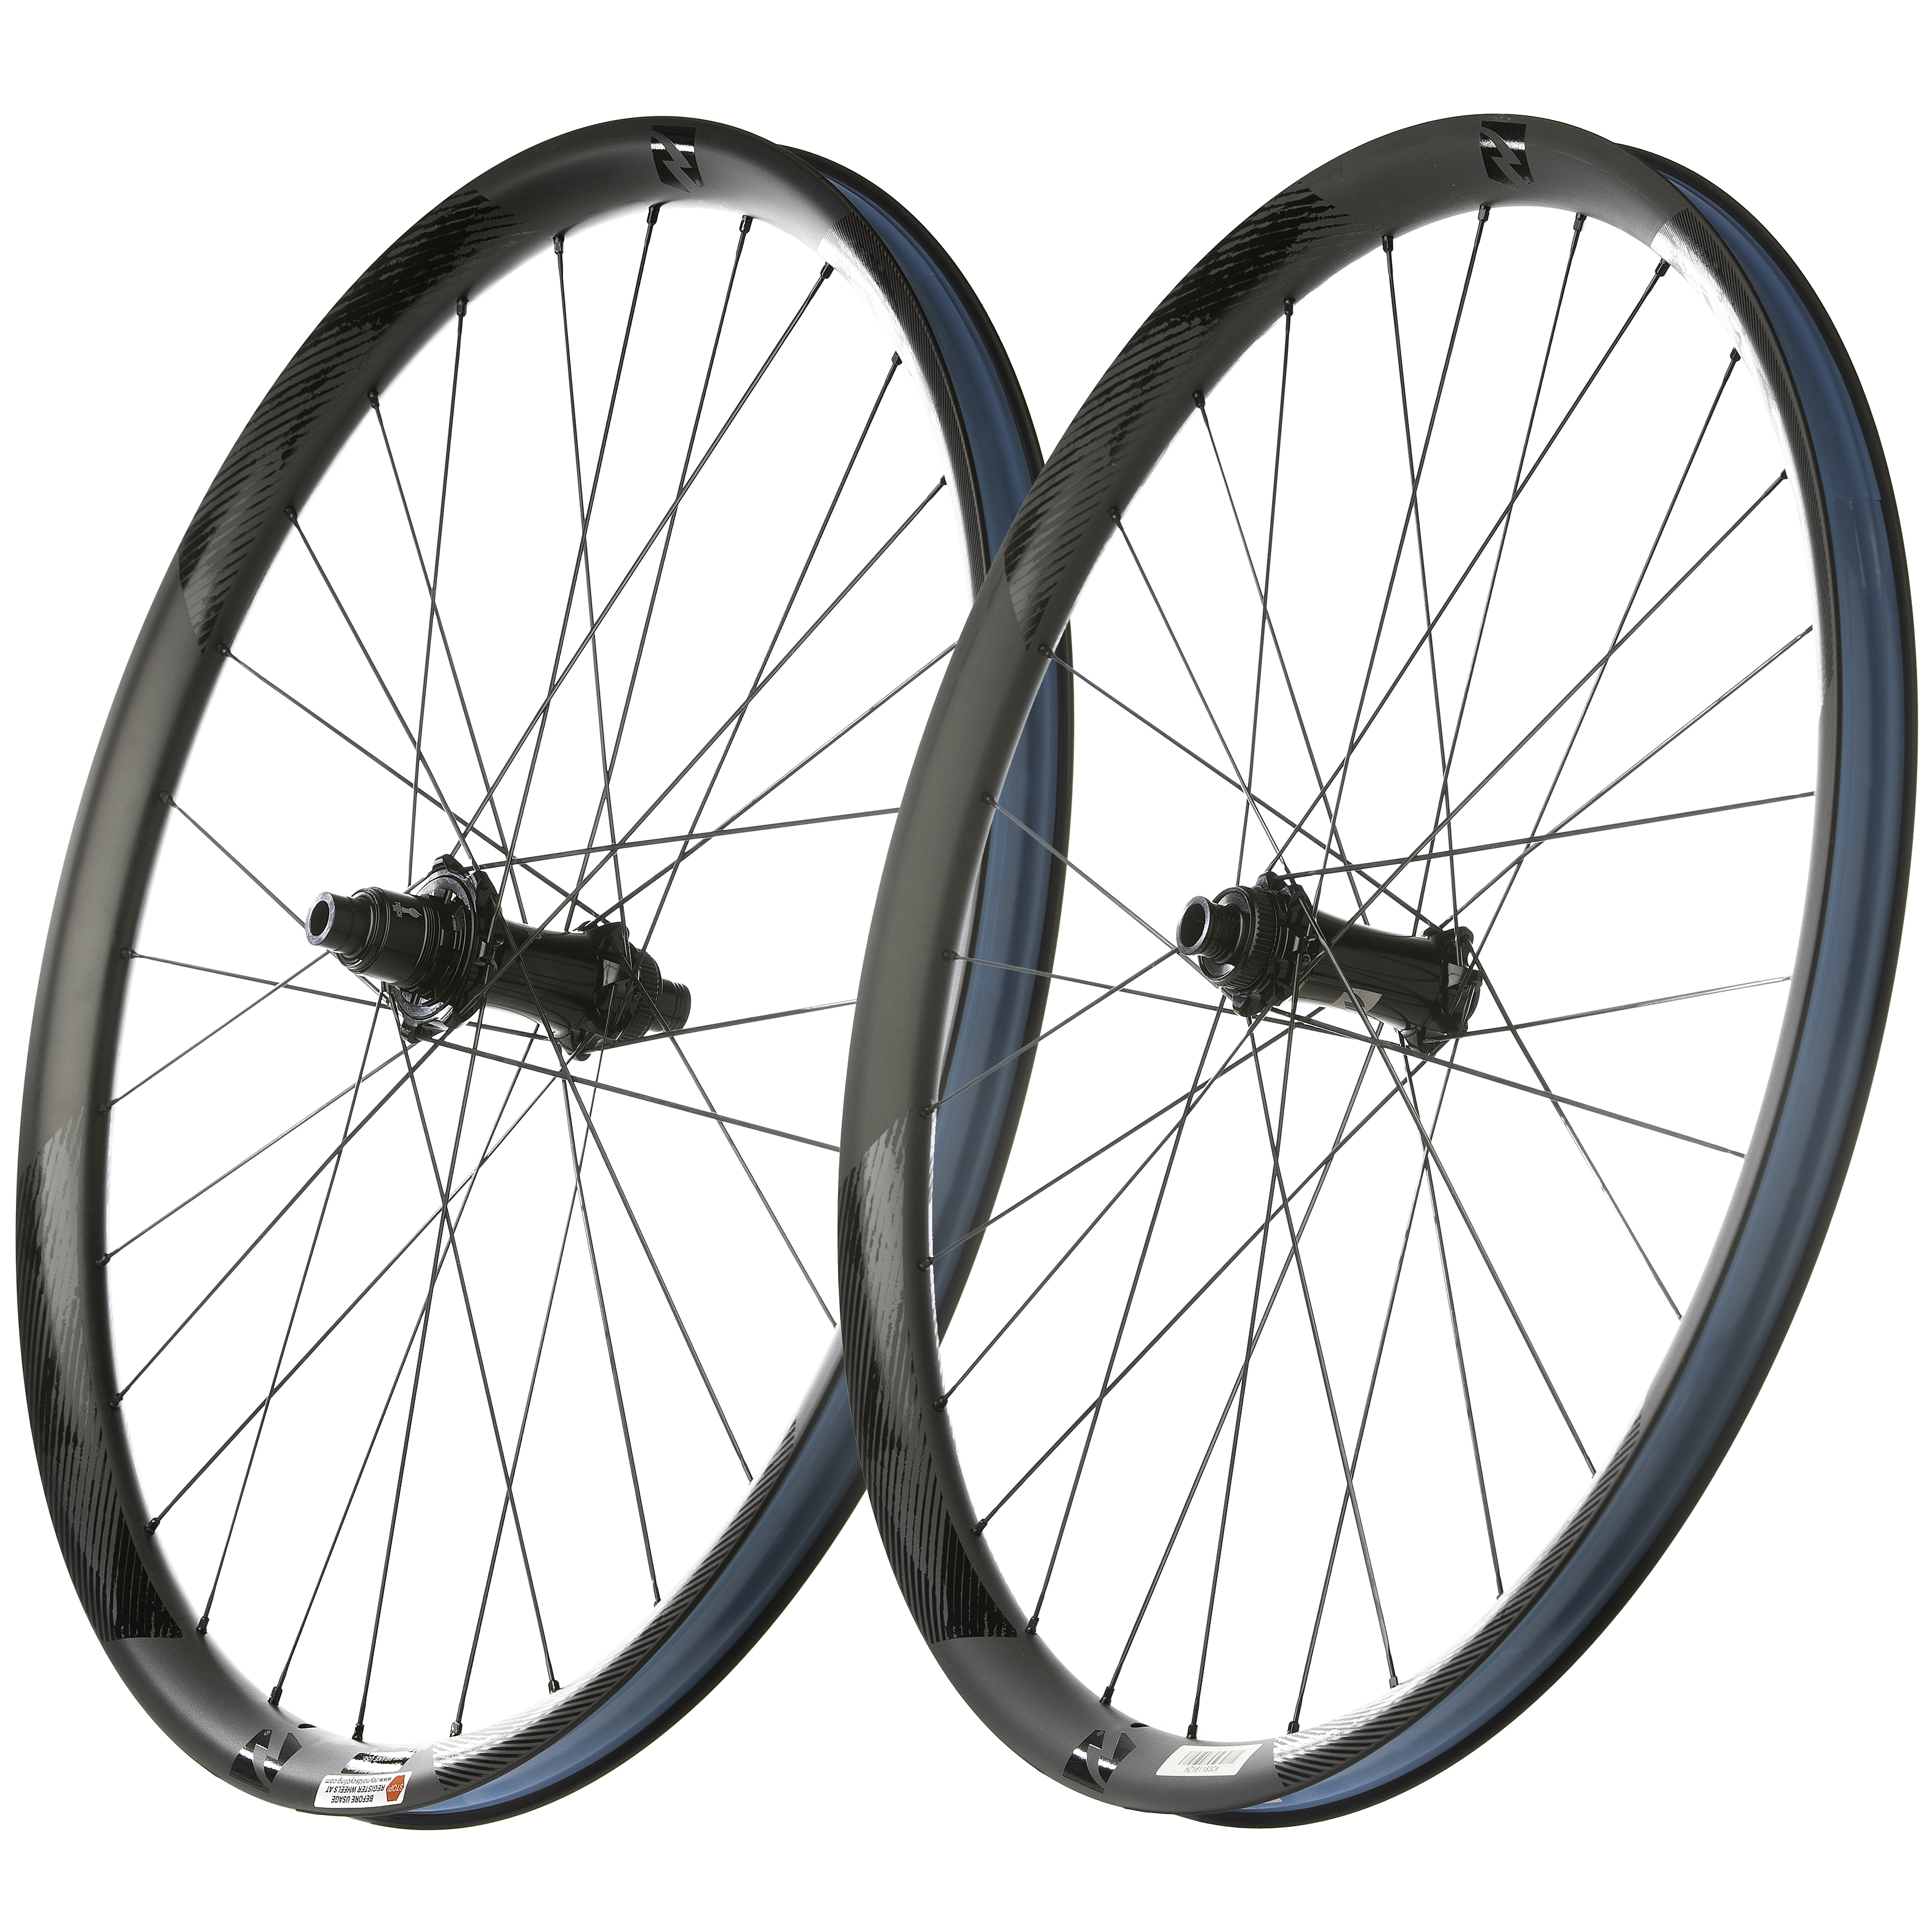 New Sun Ringle Duroc 40 Expert 27.5" FRONT Wheel 6-Bolt Disc Boost 15x110mm 